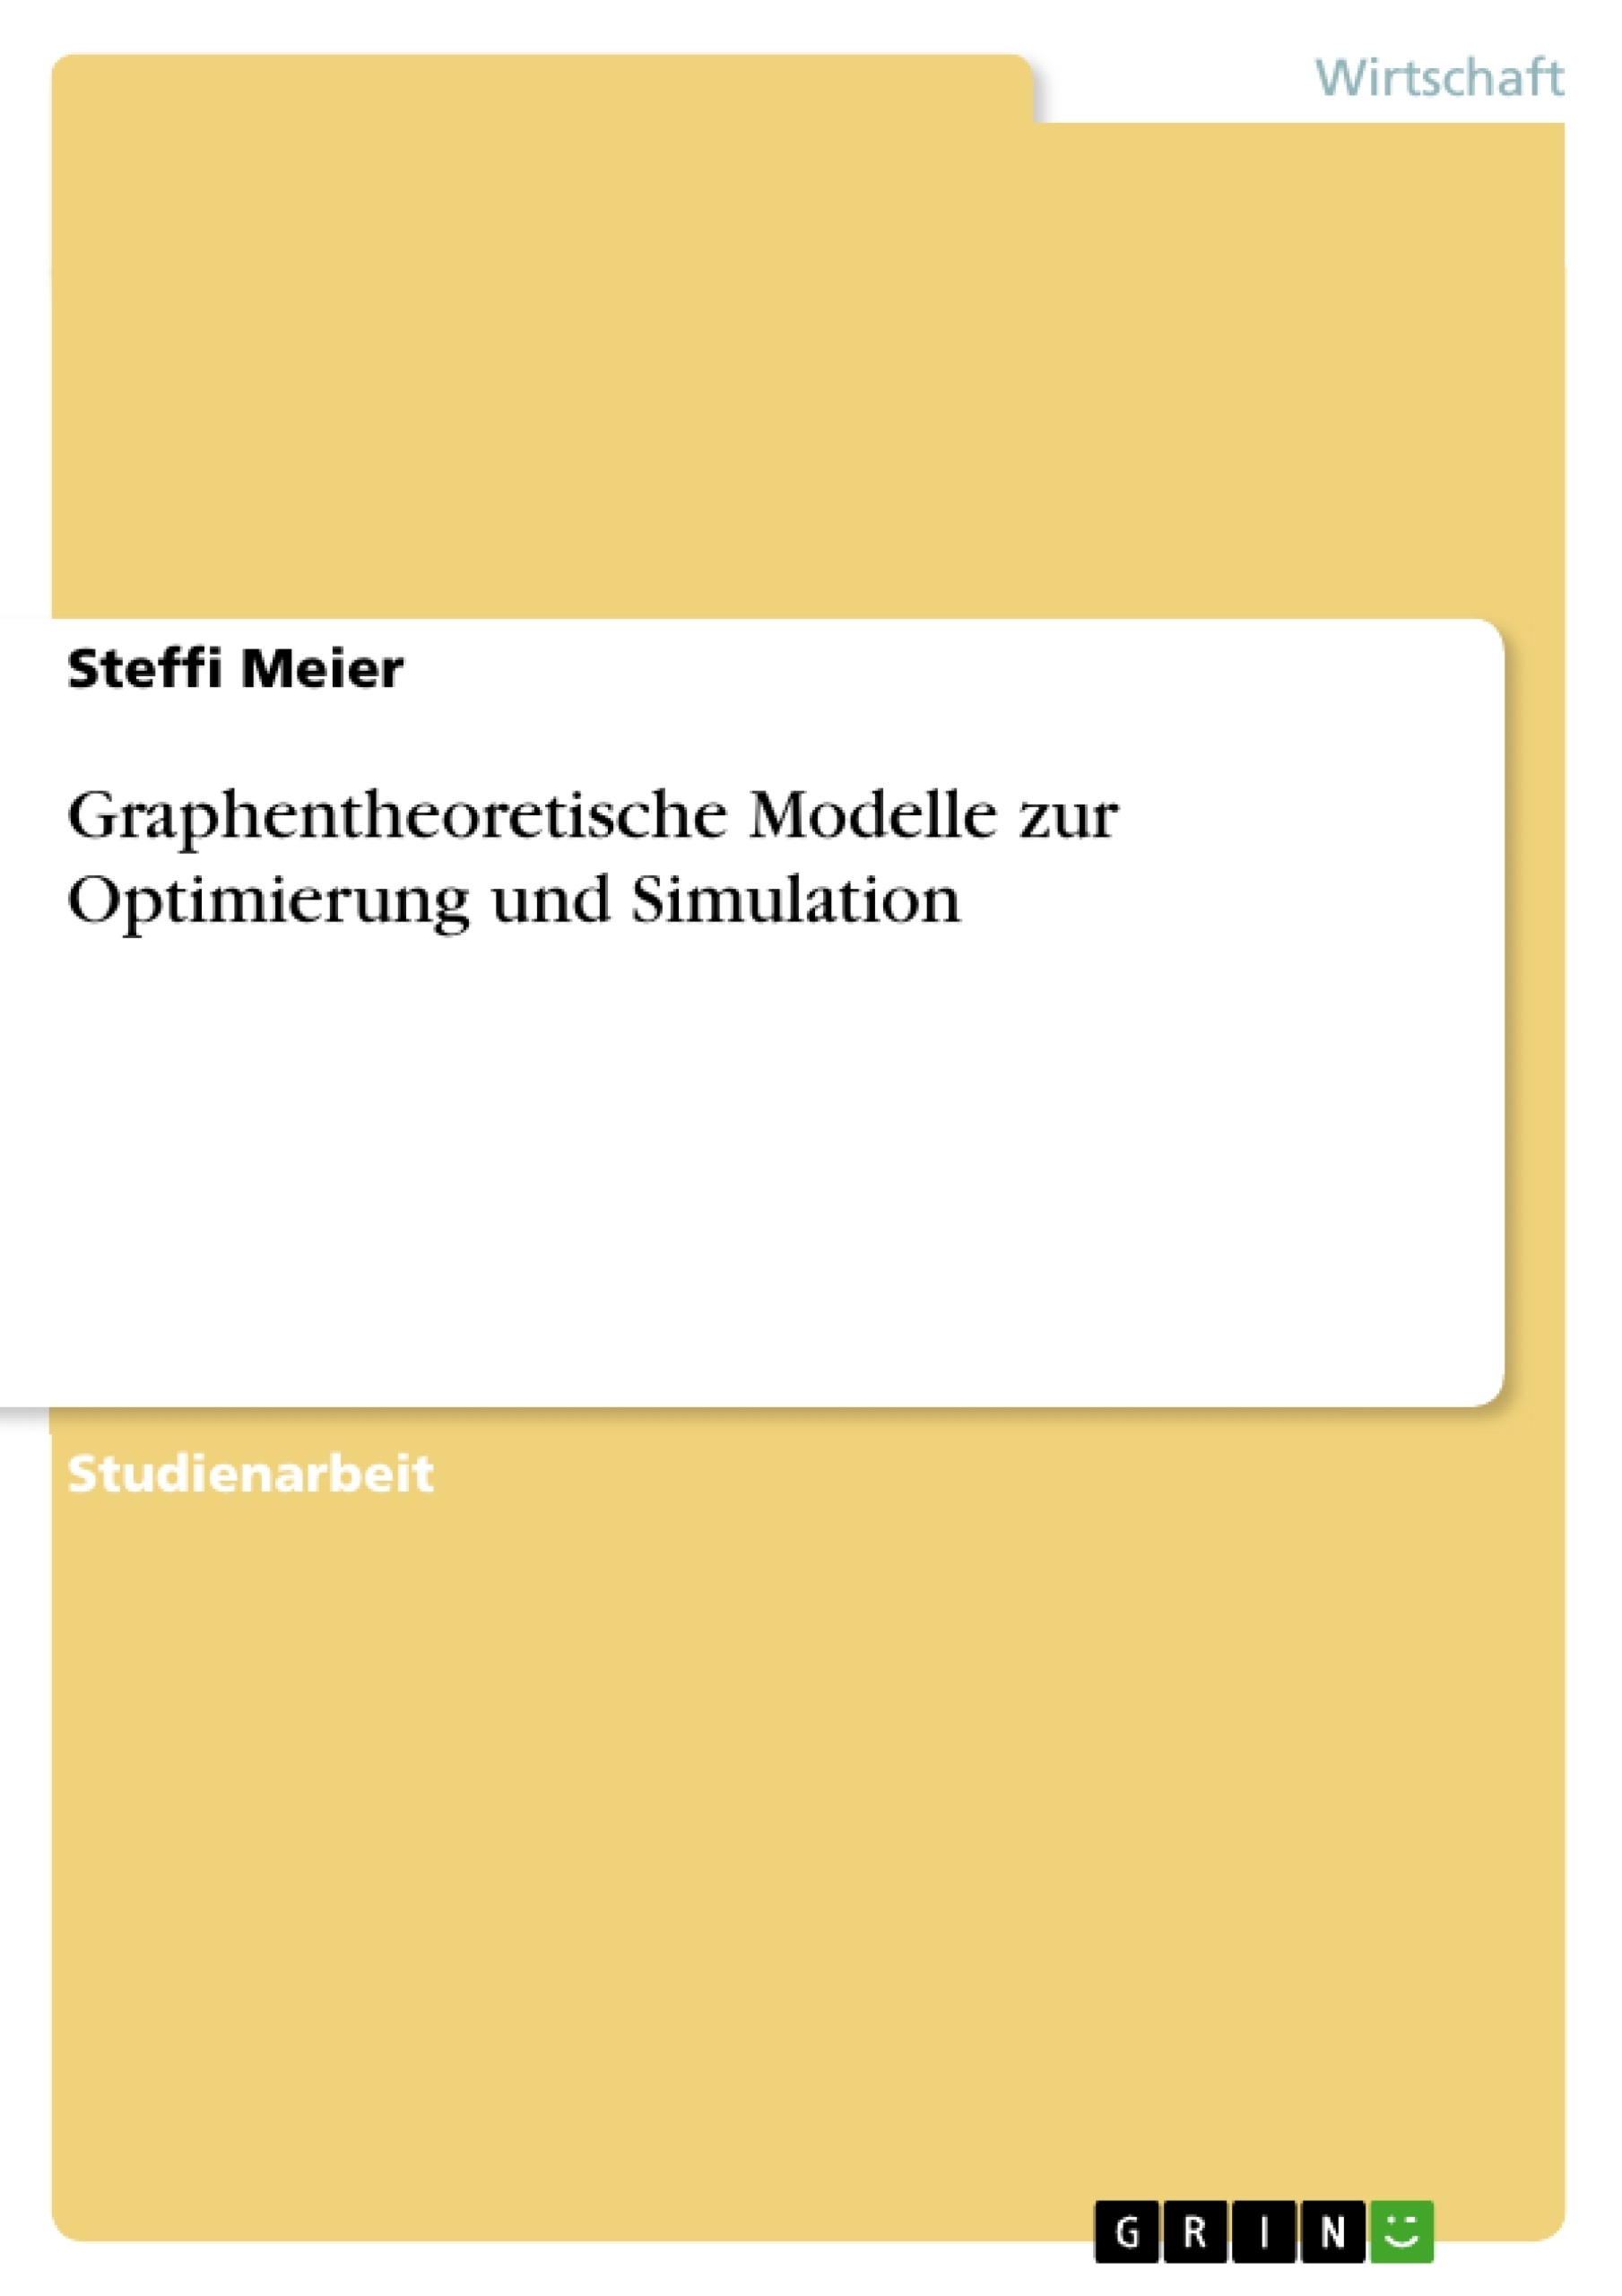 Título: Graphentheoretische Modelle zur Optimierung und Simulation